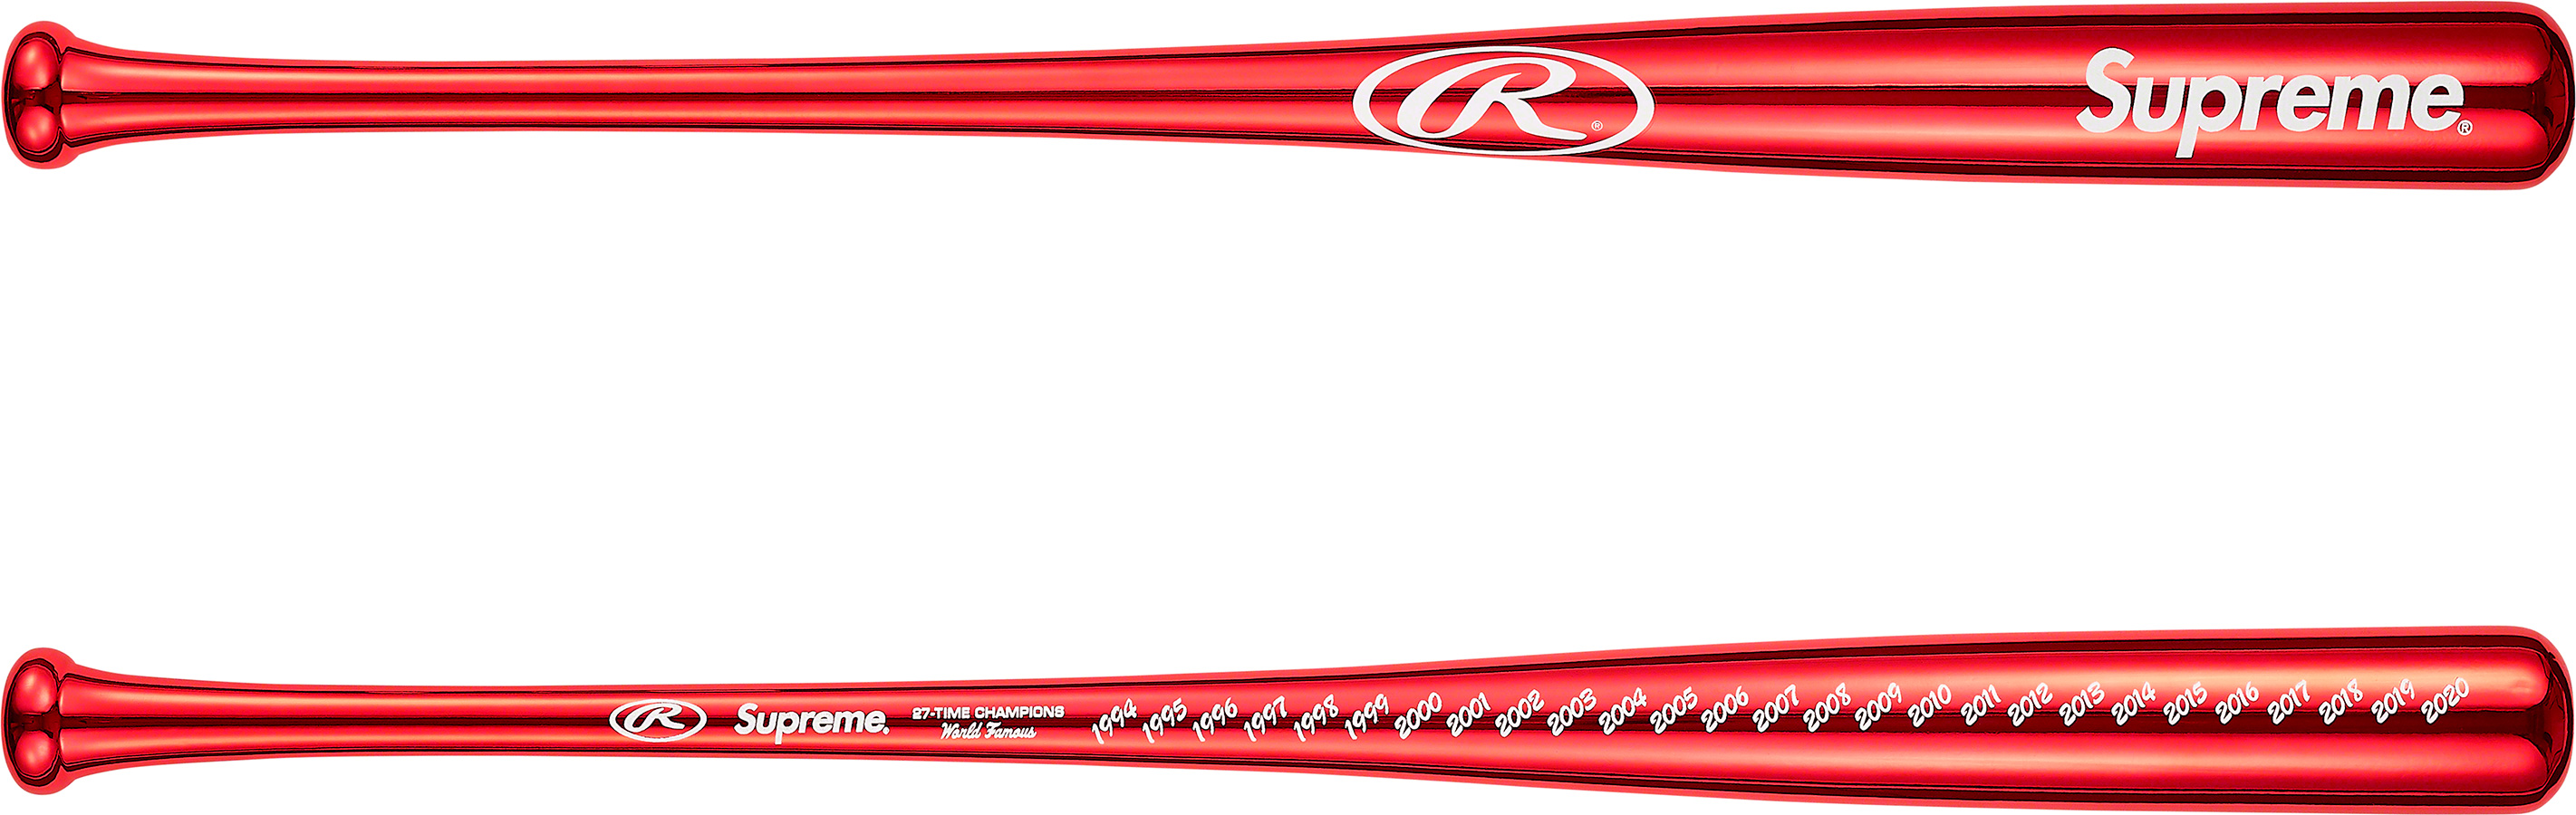 Supreme x Rawlings Chrome Maple Wood Baseball Bat | Supreme - SLN ...